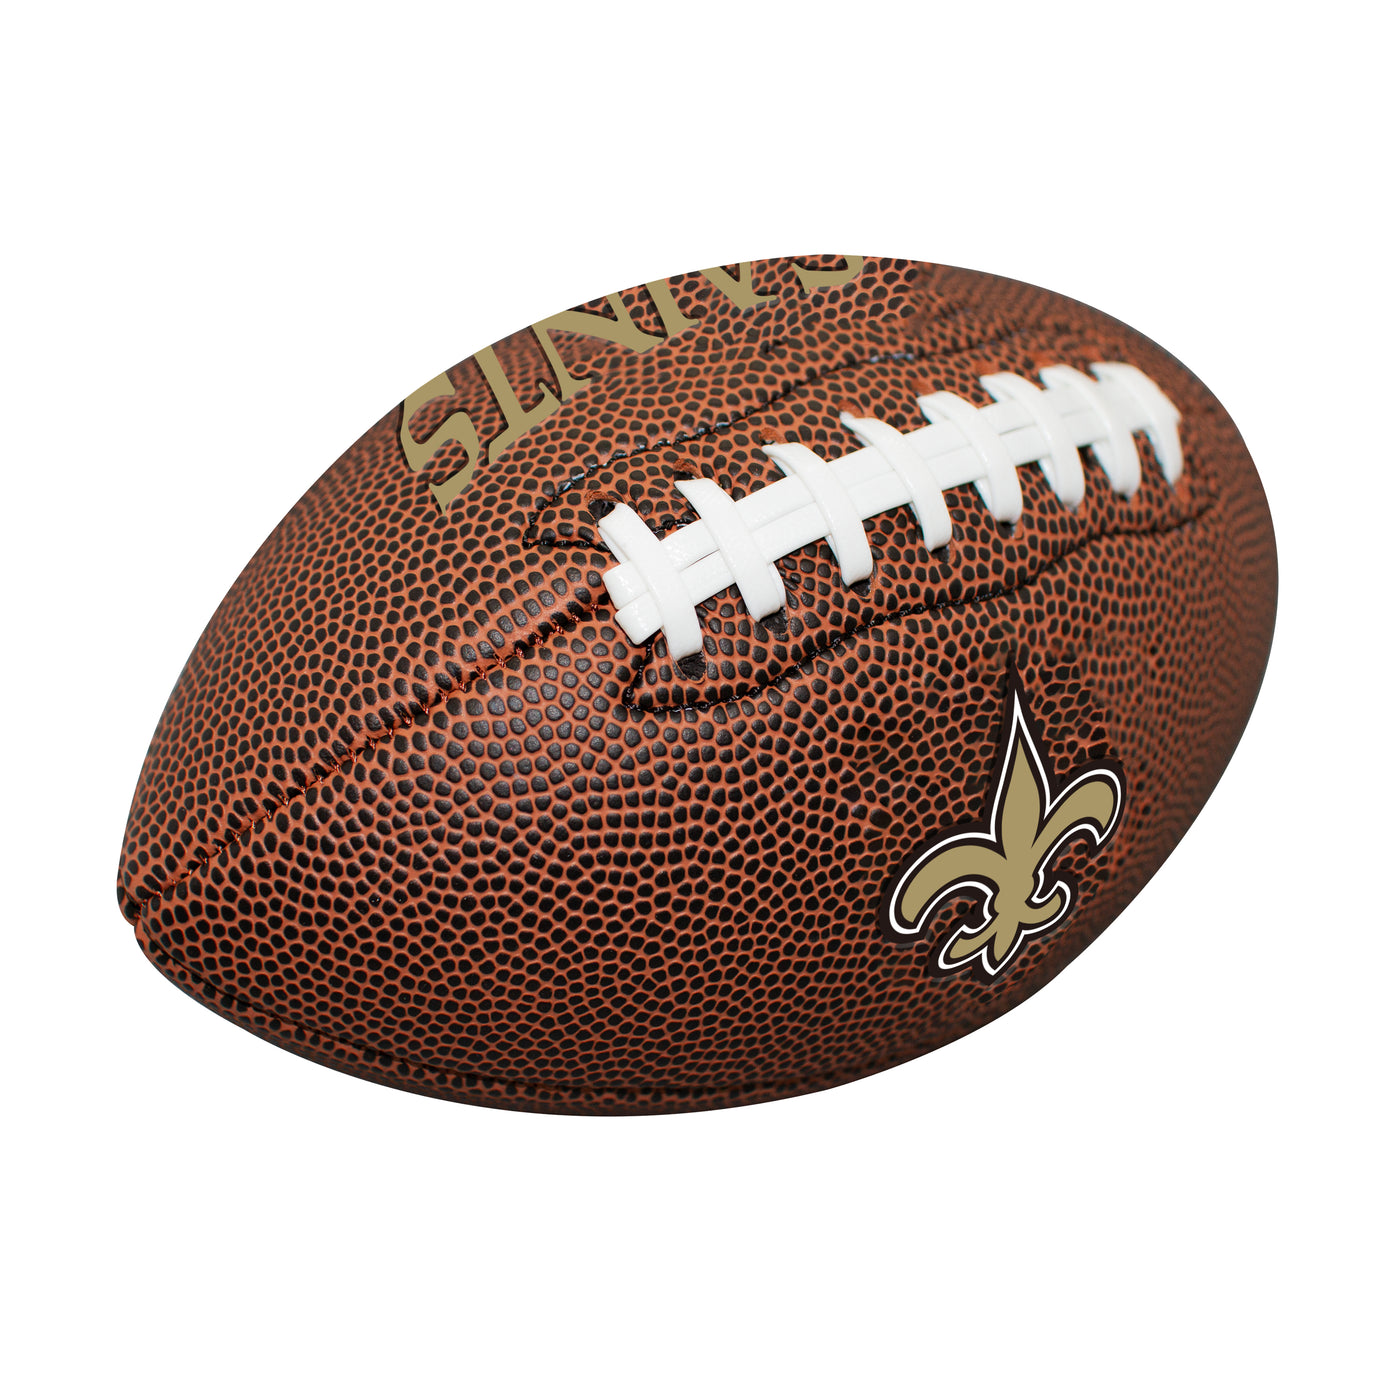 New Orleans Saints Mini Size Composite Football